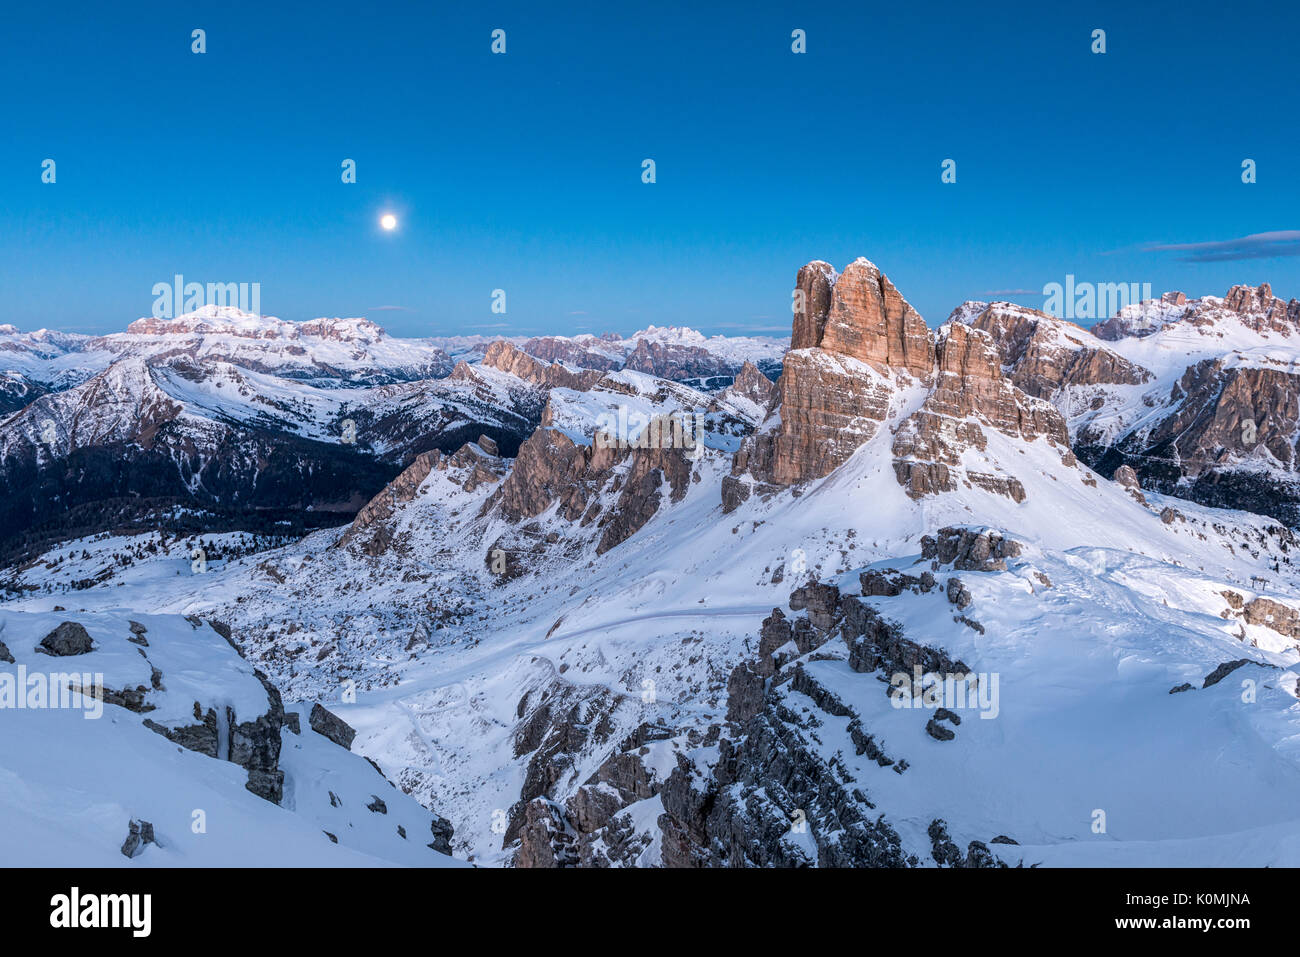 Nuvolau, Dolomiten, Venetien, Italien. Blaue Stunde und Vollmond in den Dolomiten mit den Gipfeln der Sellagruppe und der averau Stockfoto